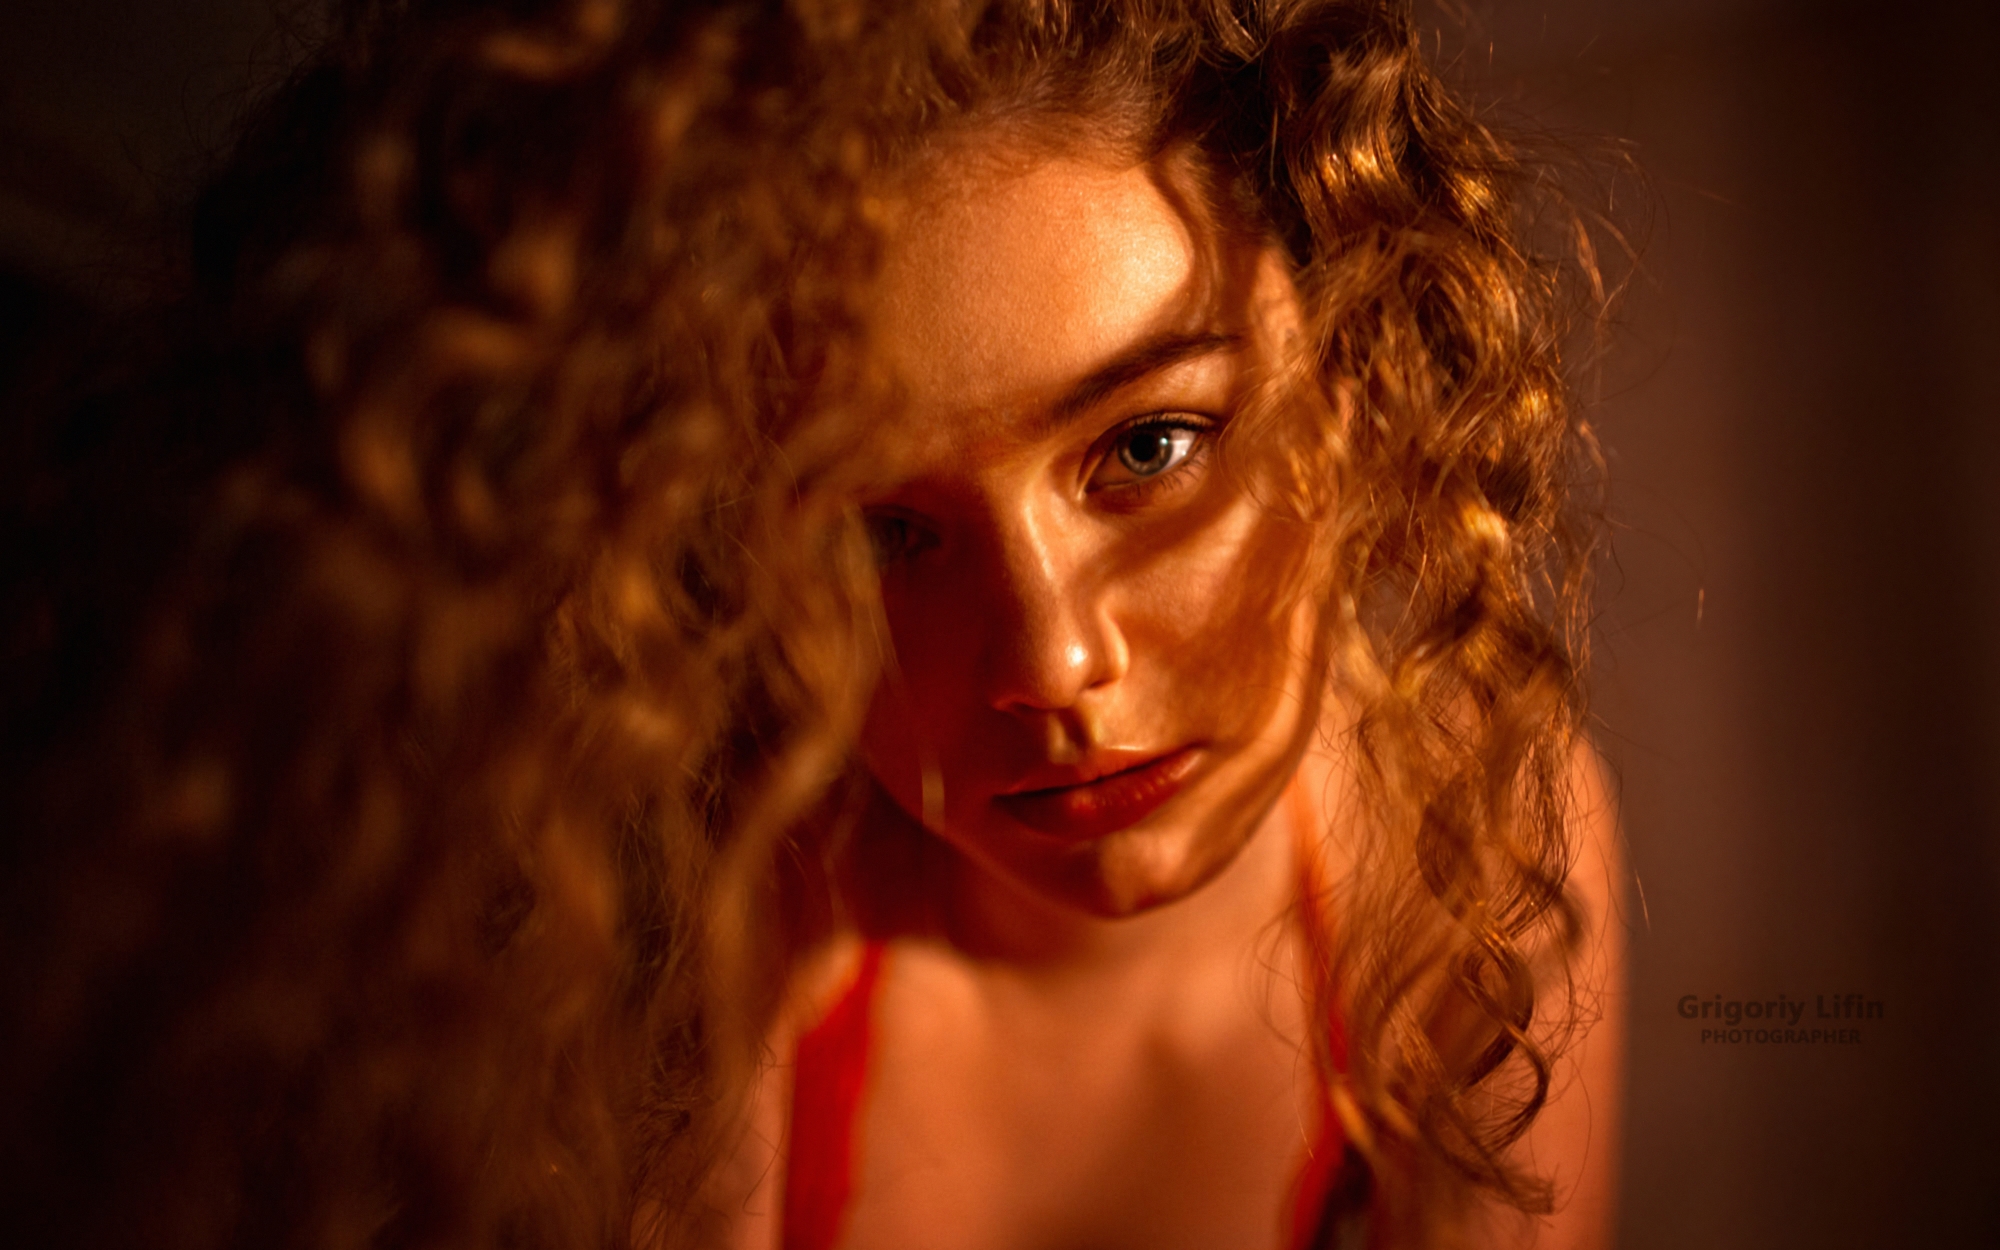 Alina Zaslavskaya Women Model Brunette Curly Hair Face Portrait Bokeh Depth Of Field Indoors Women I 2000x1250